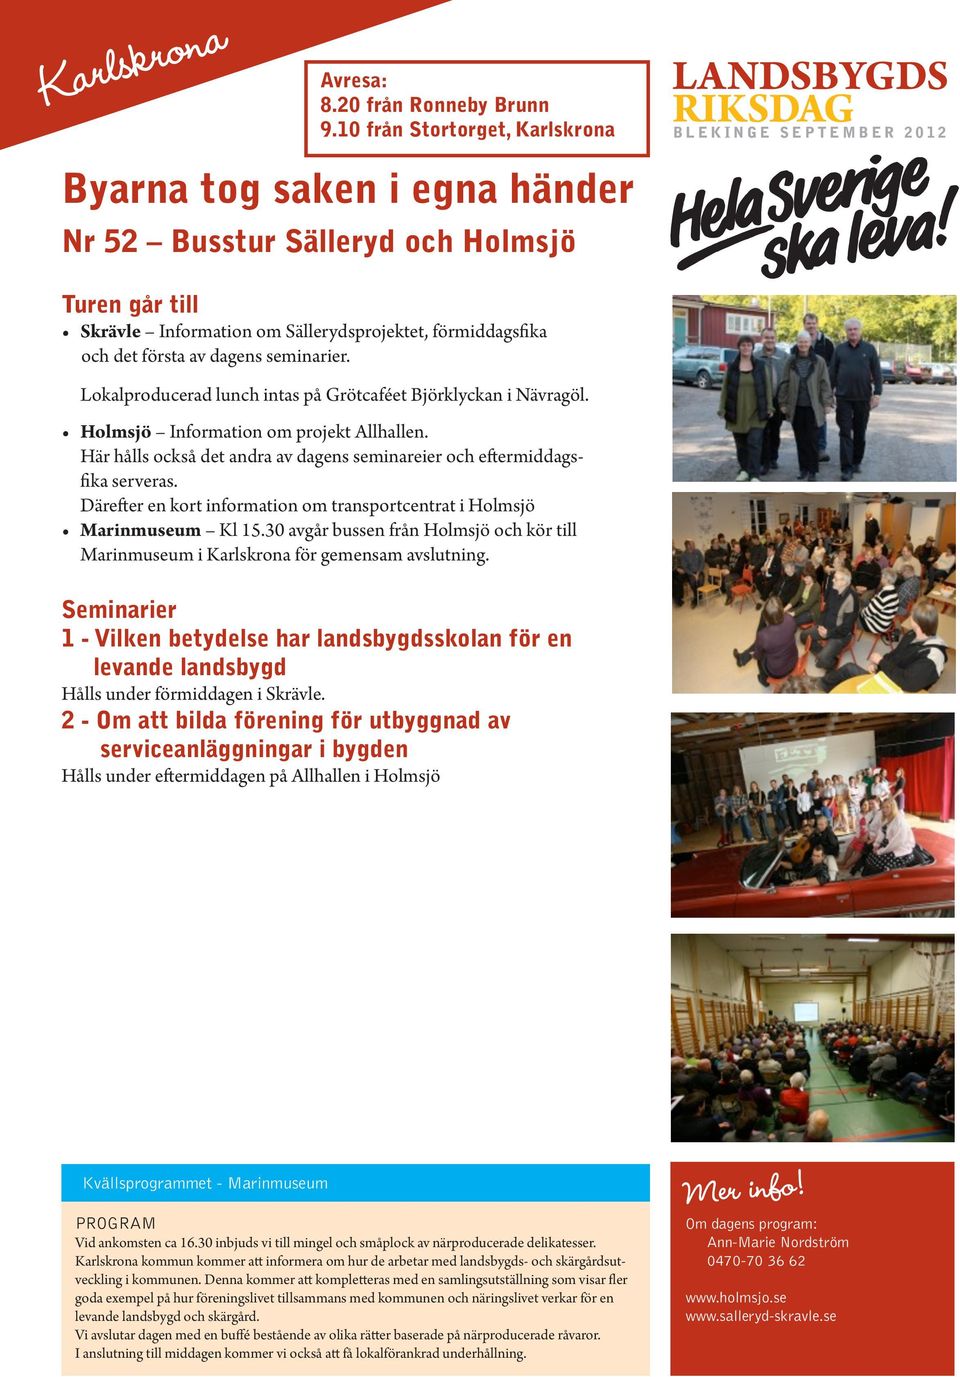 Här hålls också det andra av dagens seminareier och eftermiddagsfika serveras. Därefter en kort information om transportcentrat i Holmsjö Marinmuseum Kl 15.